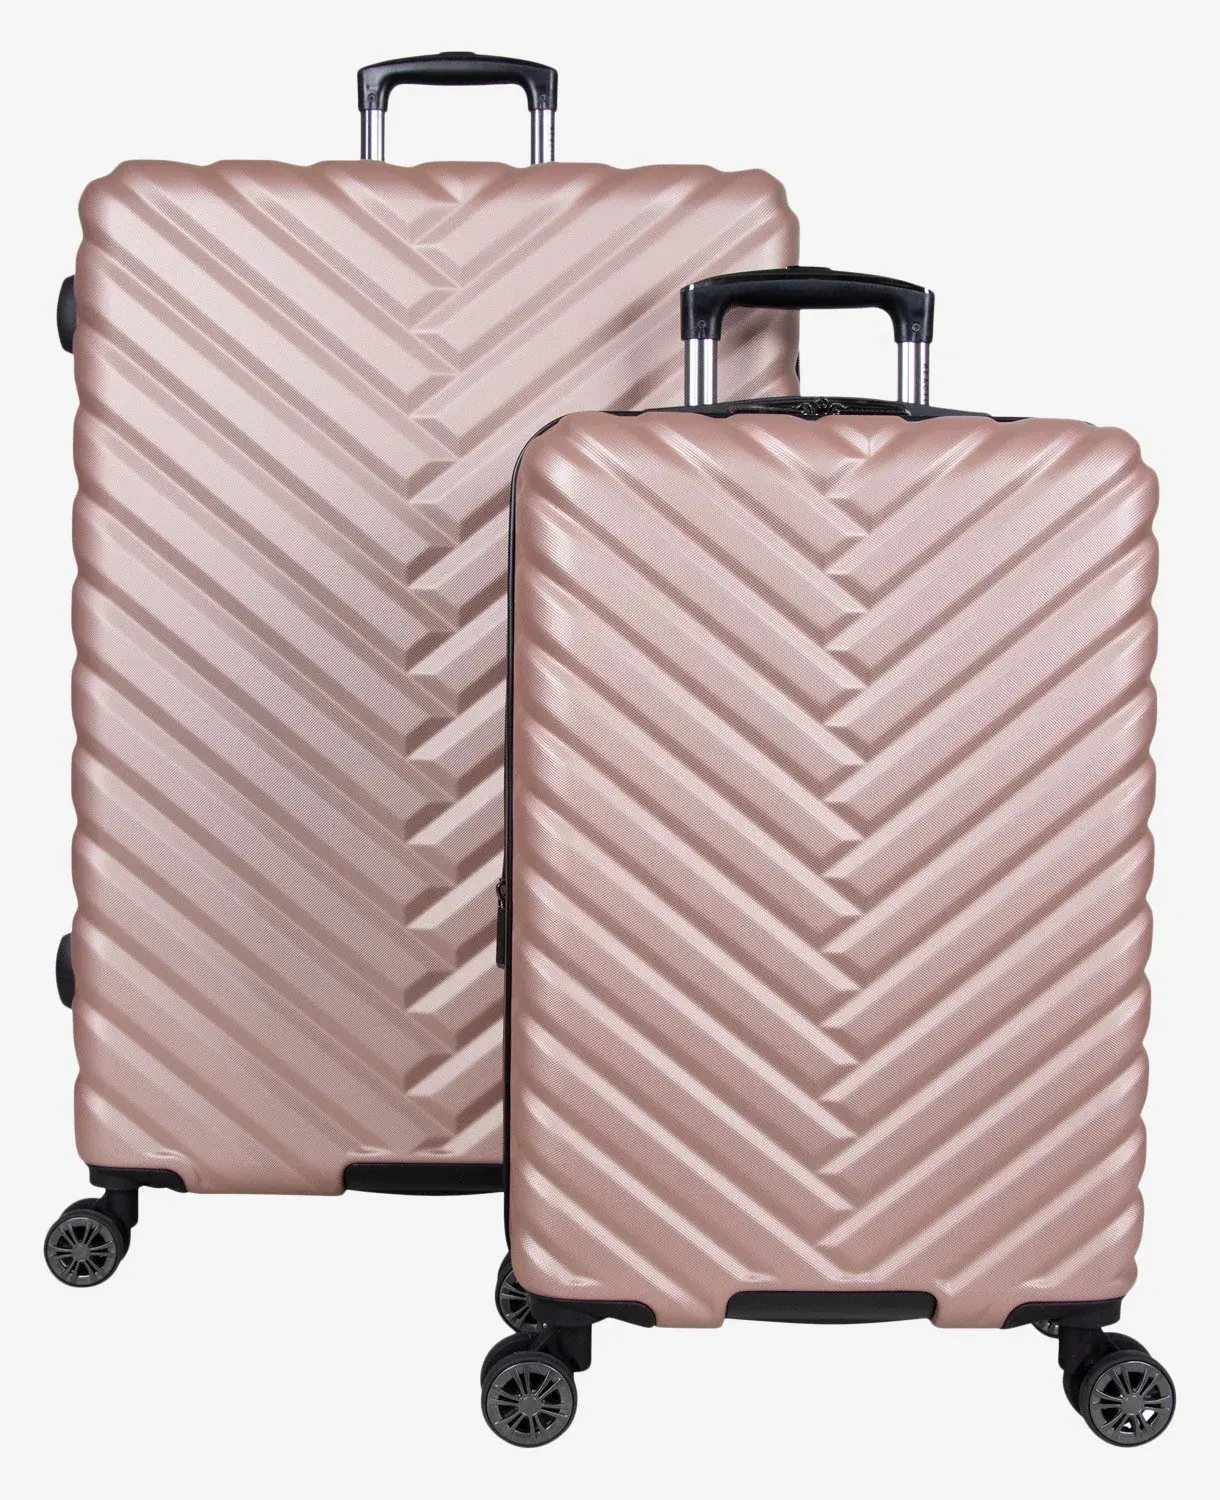 حقيبة سفر مخصصة بسعر المصنع زهيدة الثمن مزودة بعجلات من مادة ABS تُحمل على الجهة الأخرى حقيبة أمتعة حقيبة سفر بعجلات